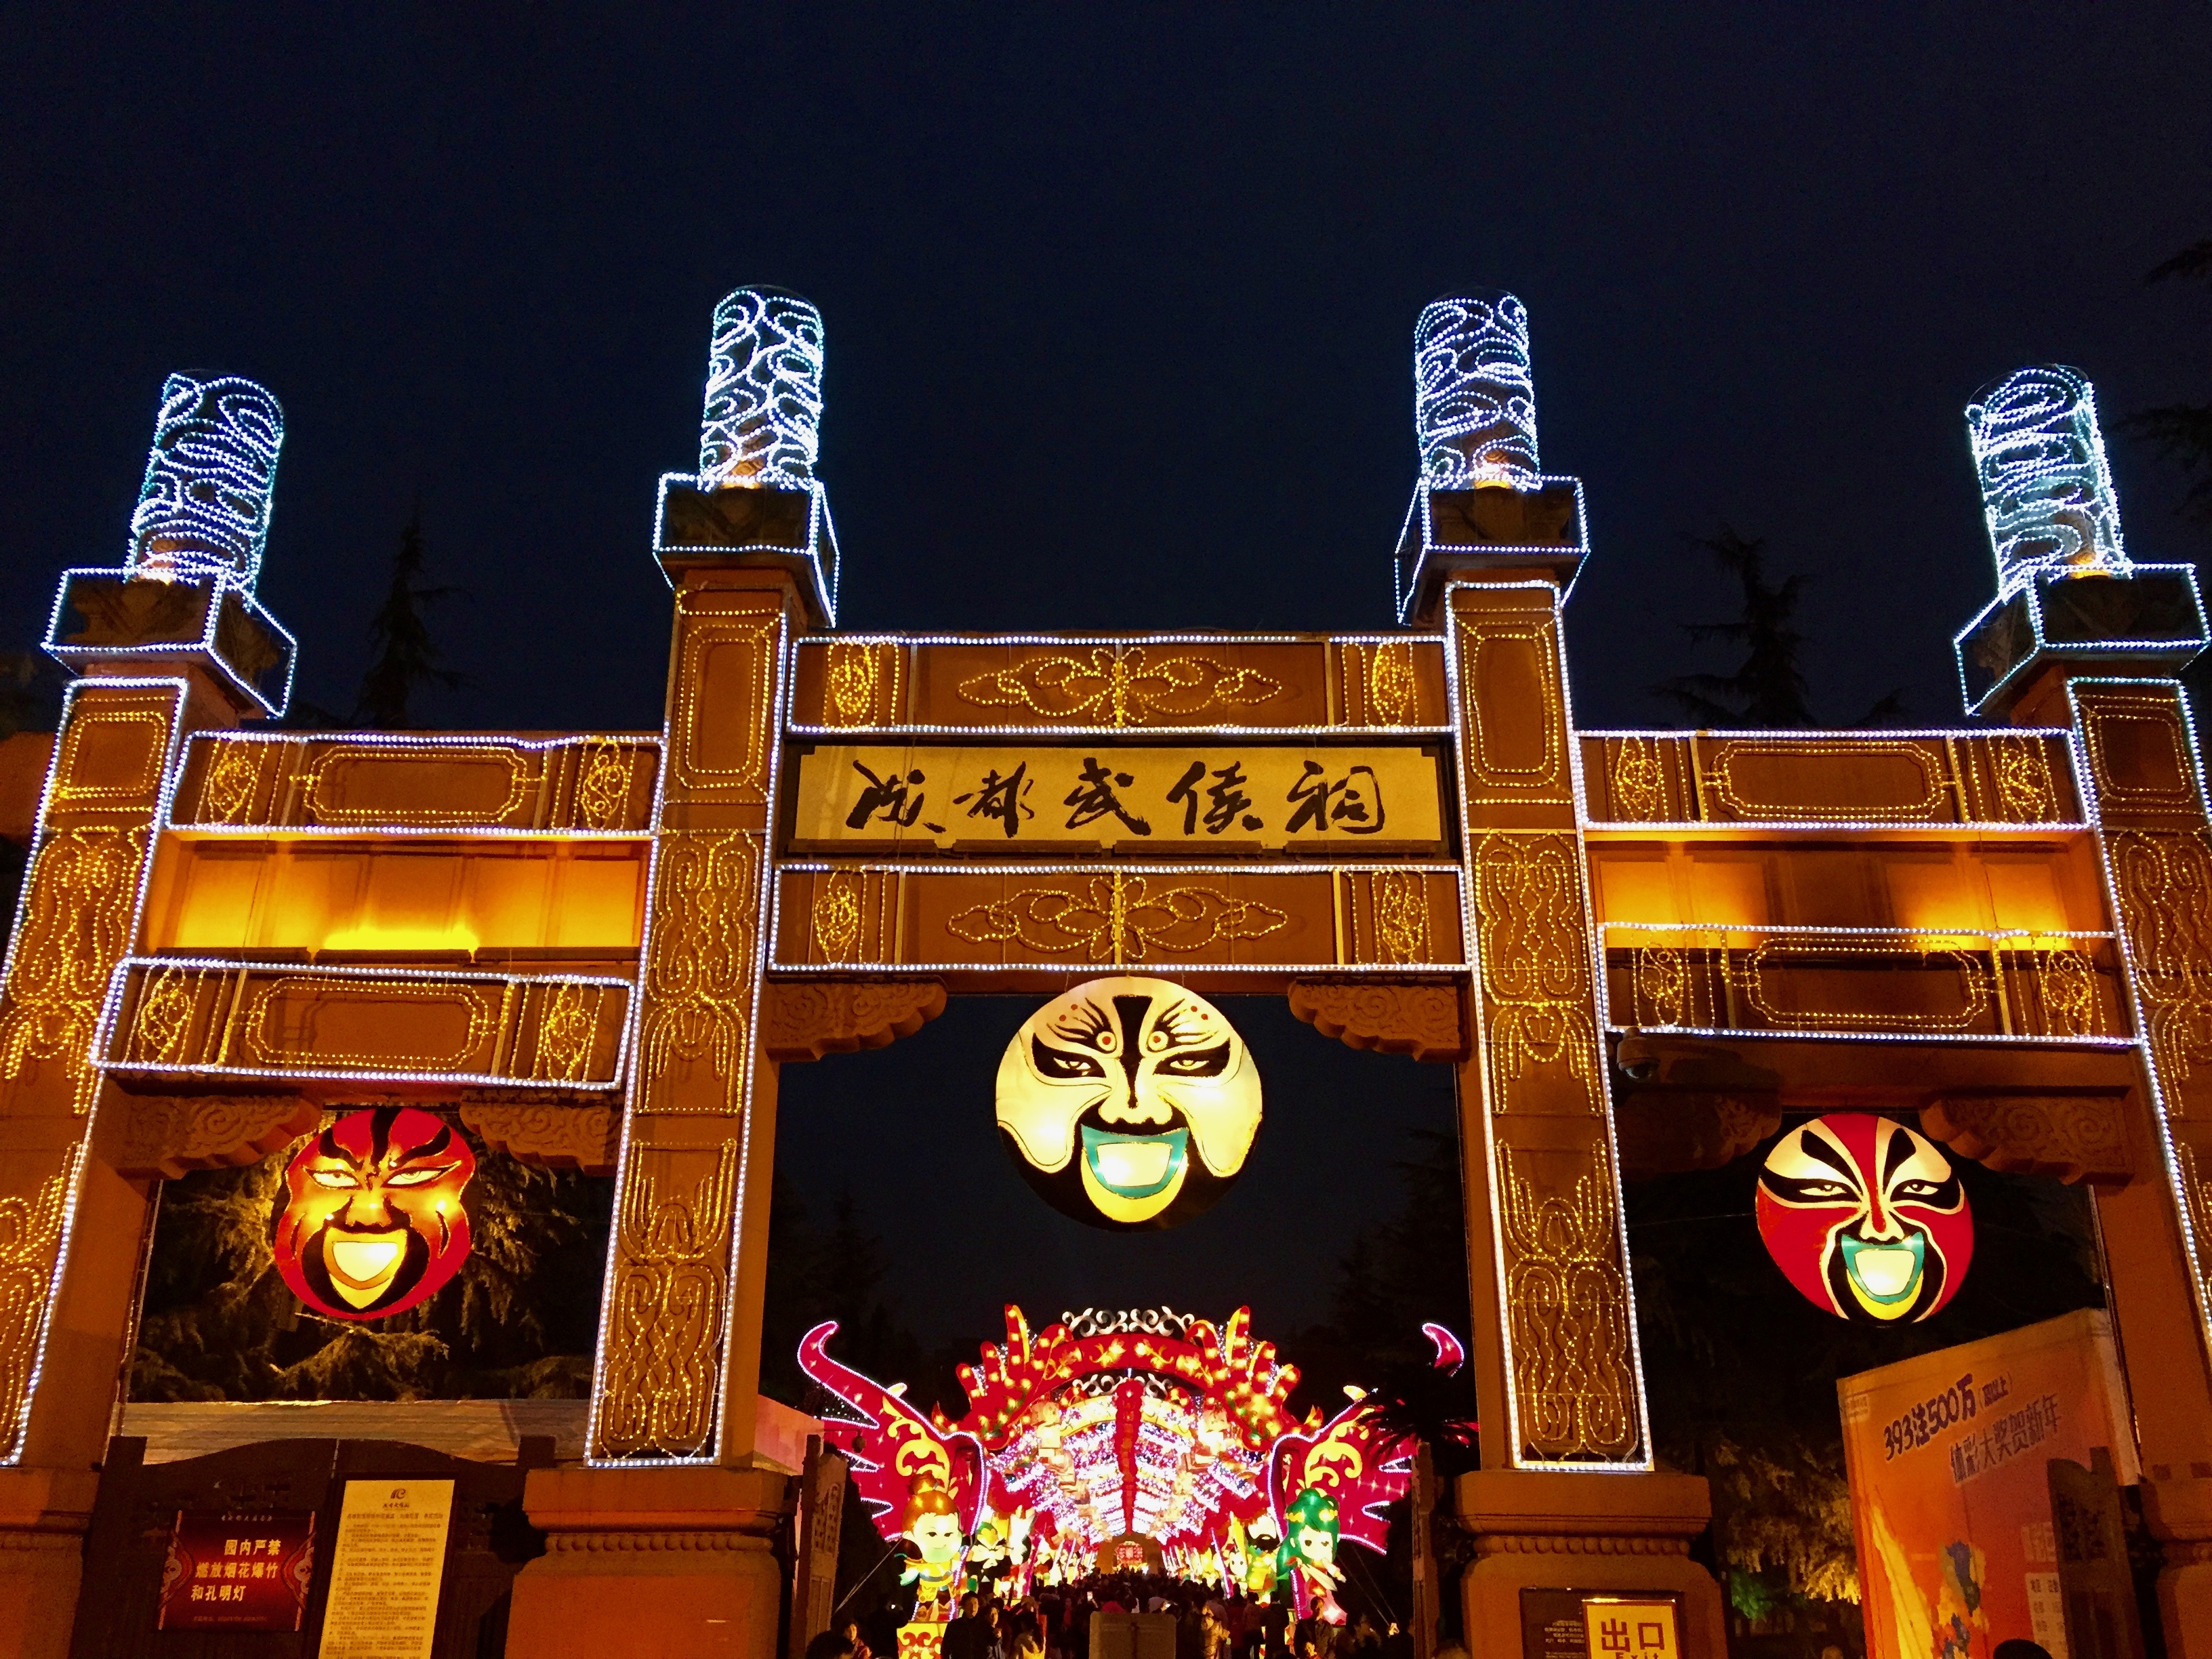 Spring Festival in Chengdu